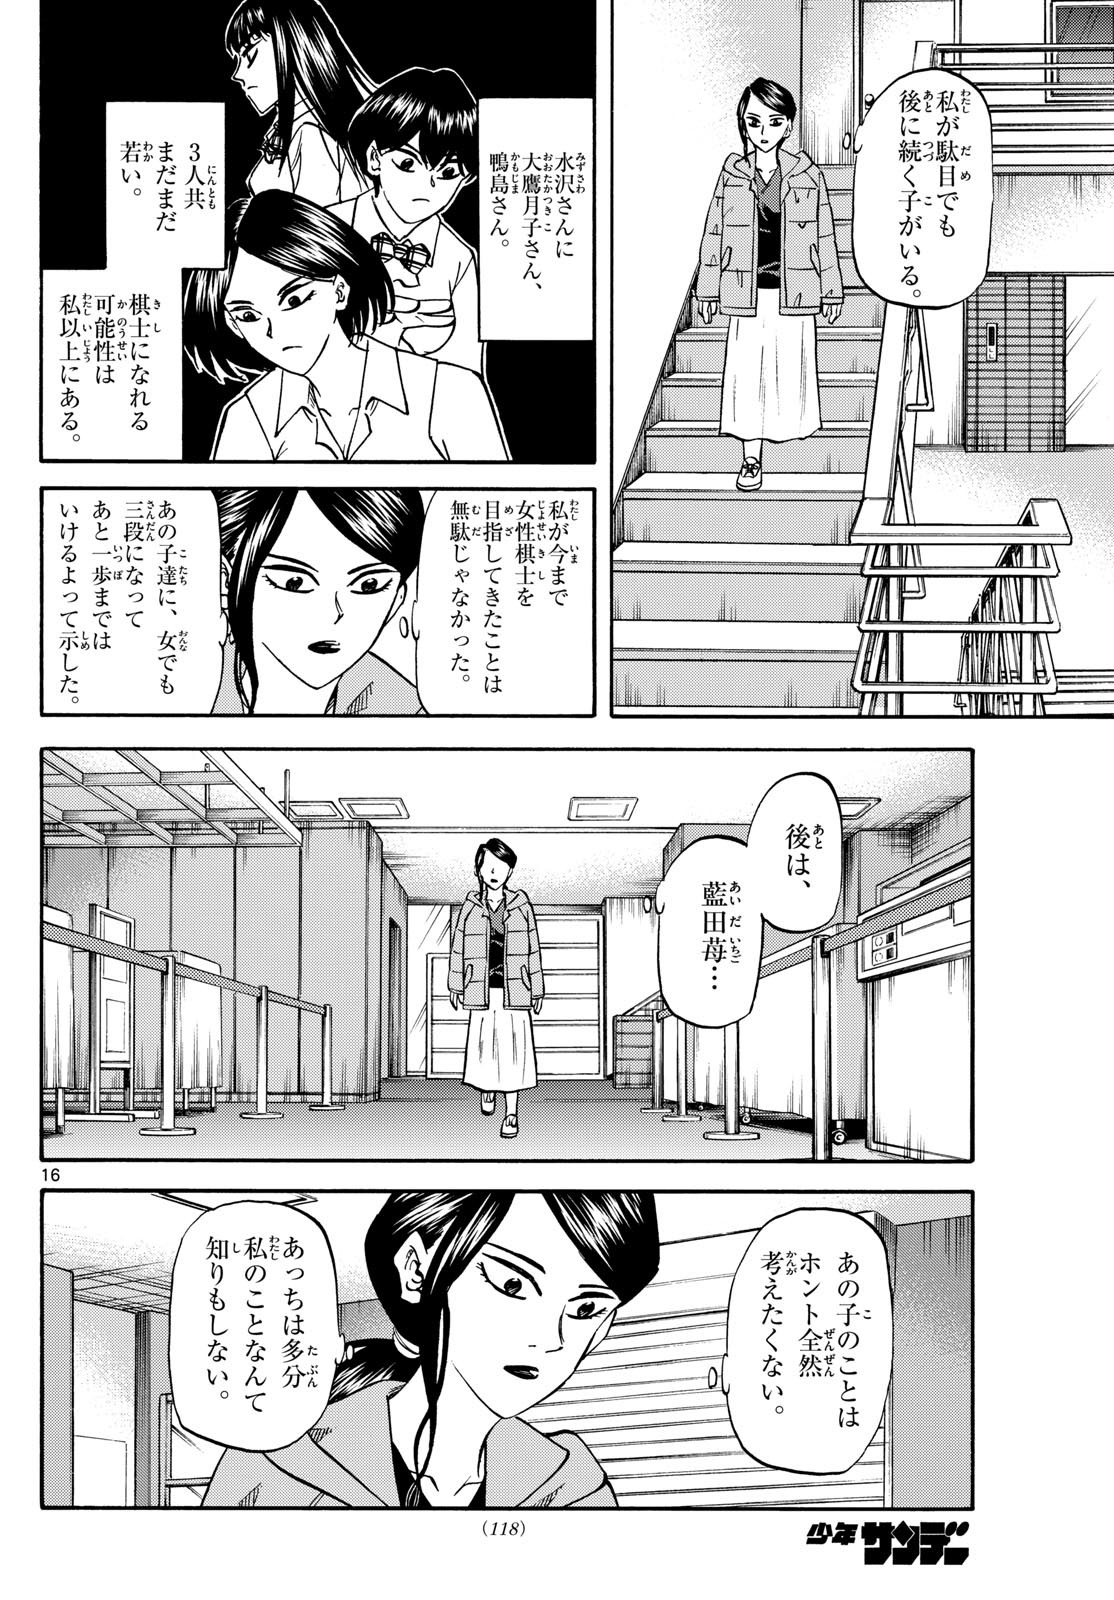 Ryu-to-Ichigo - Chapter 172 - Page 16